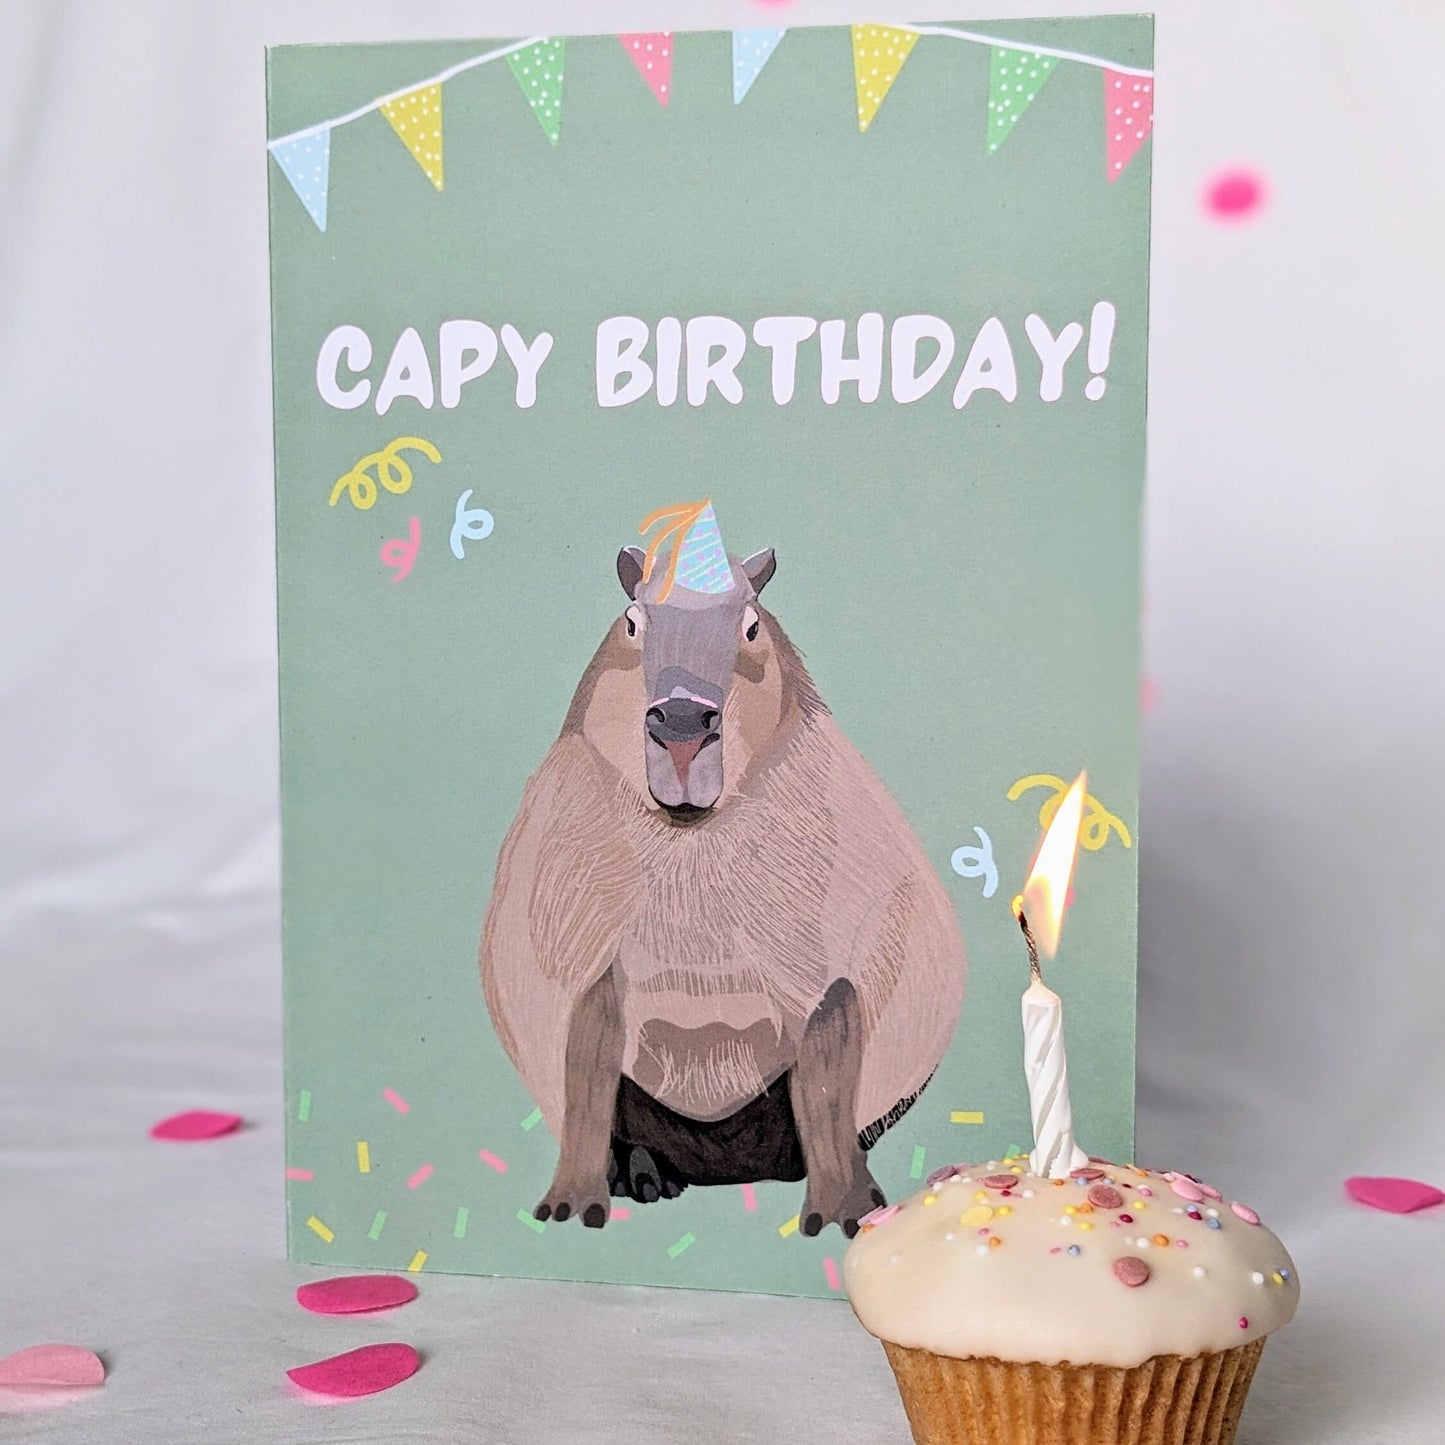 Capybara Birthday Card/ Capy Birthday!